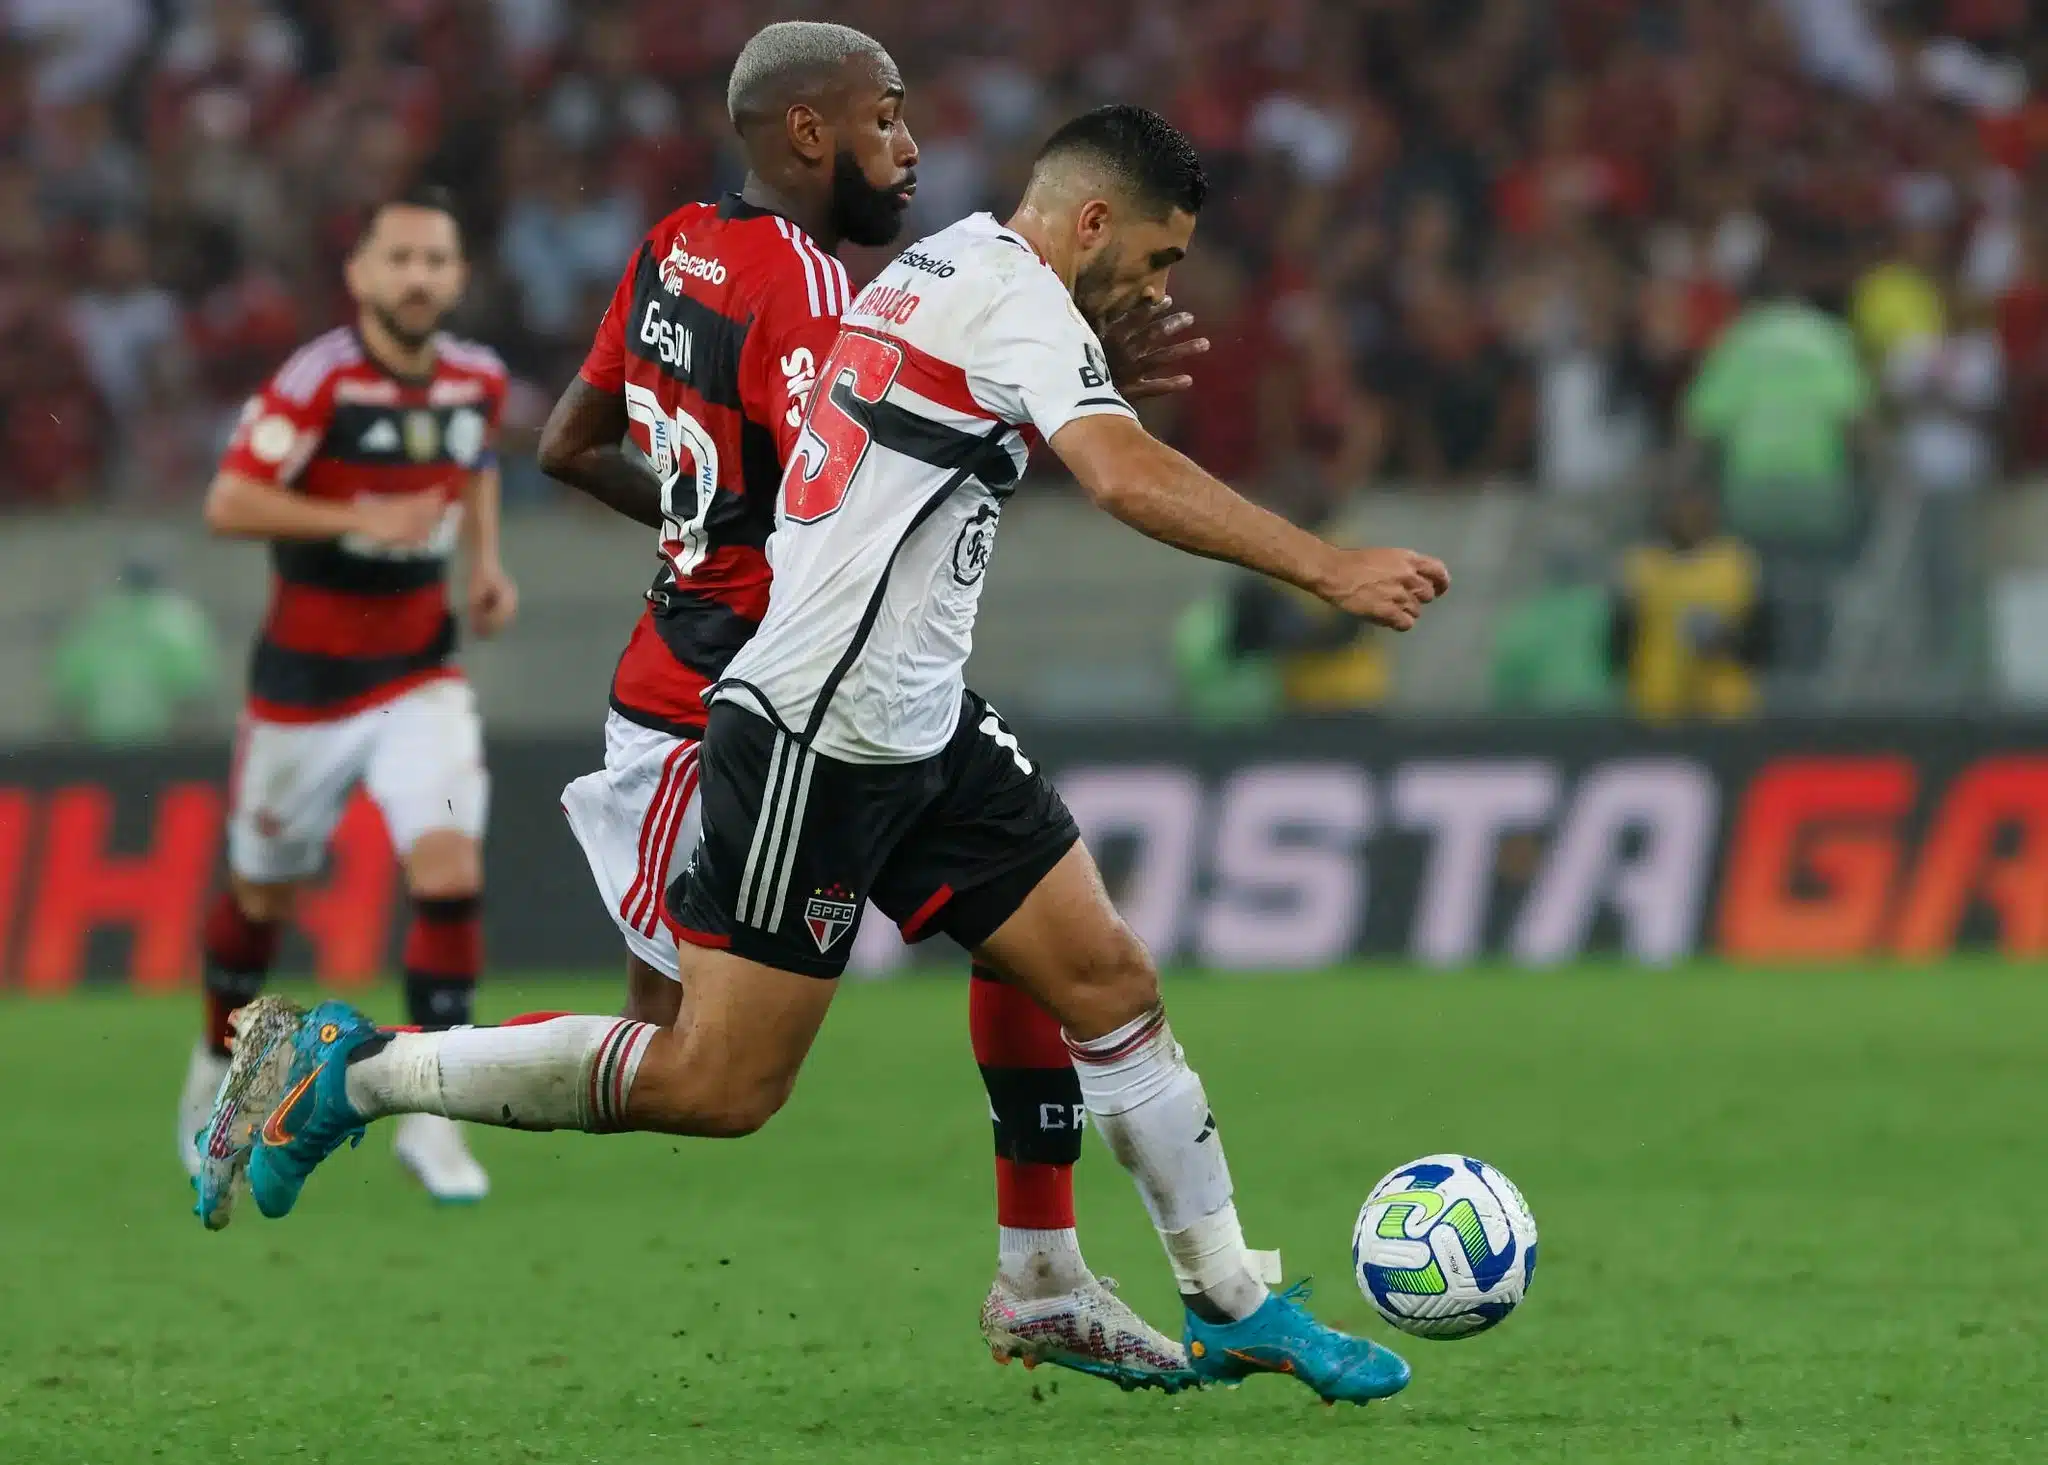 Muller escala o São Paulo ideal para enfrentar o Flamengo no Maracanã; confira